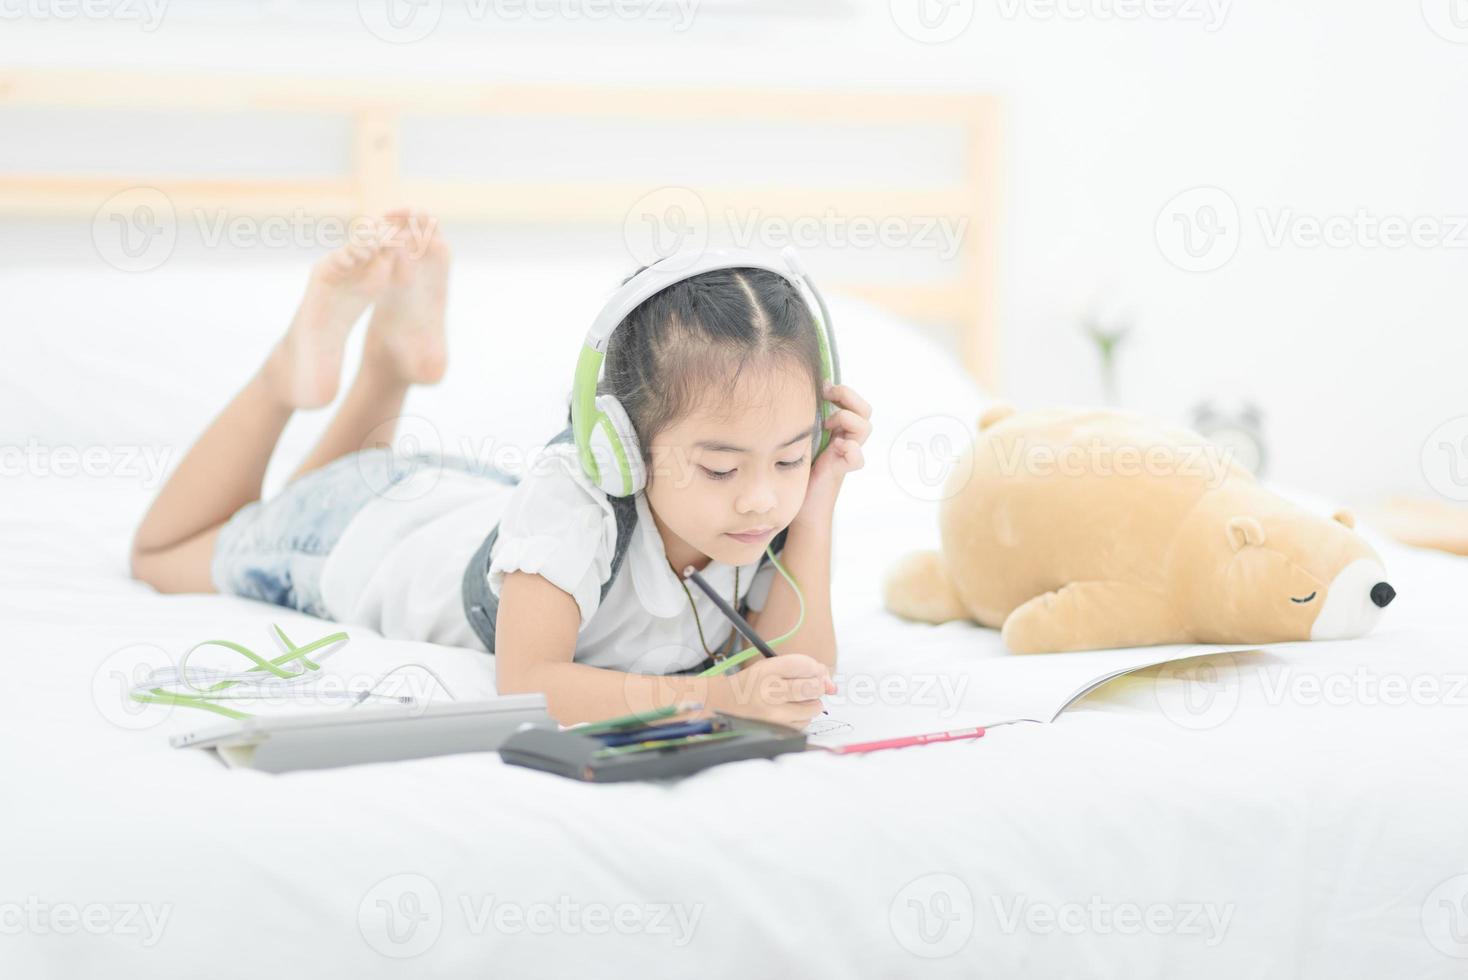 jolie petite fille asiatique faisant ses devoirs, écrivant avec des crayons colorés sur le lit à la maison. design élégant pour les enfants qui jouent, l'apprentissage préscolaire et le concept d'éducation artistique créative. photo